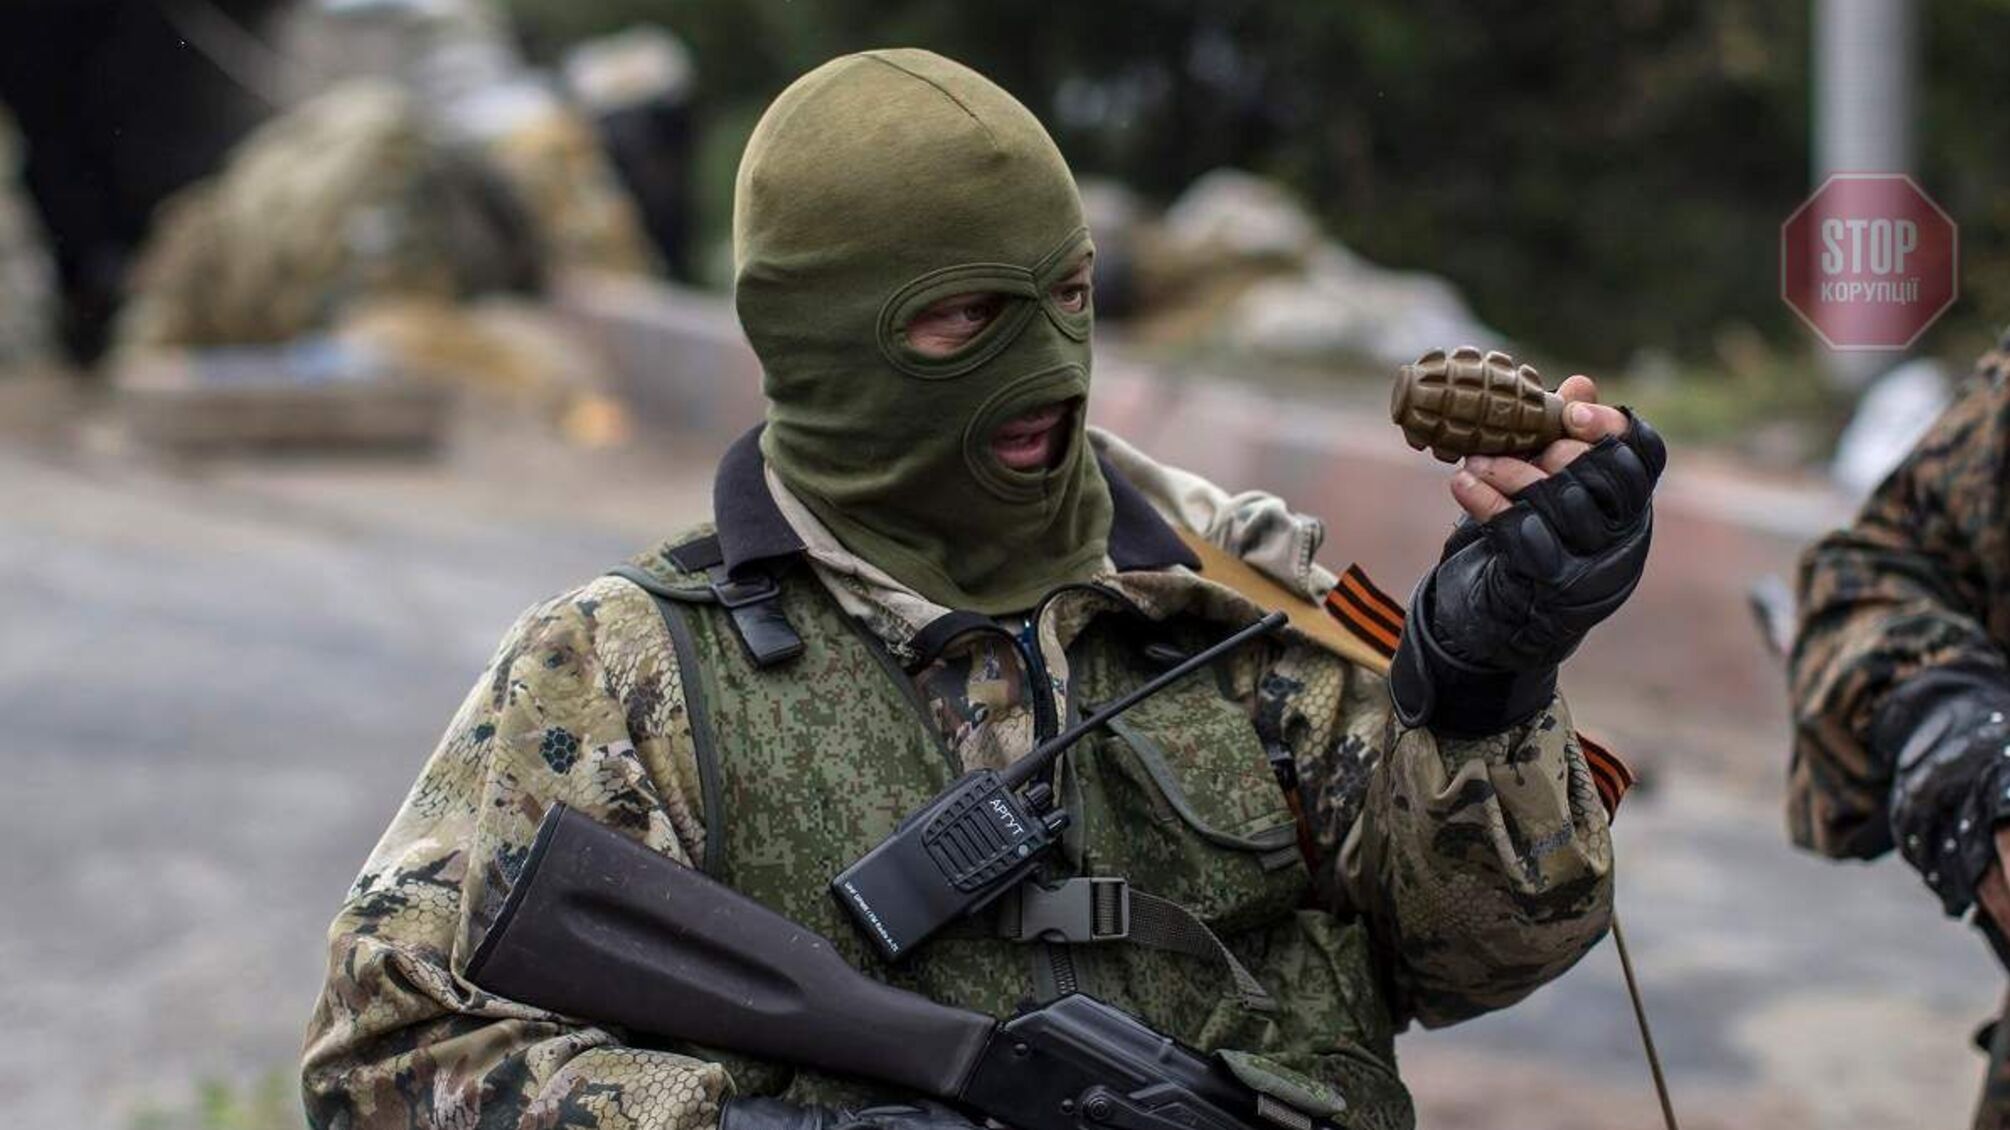 ГУР: В Донецке боевики хотят подорвать ряд объектов